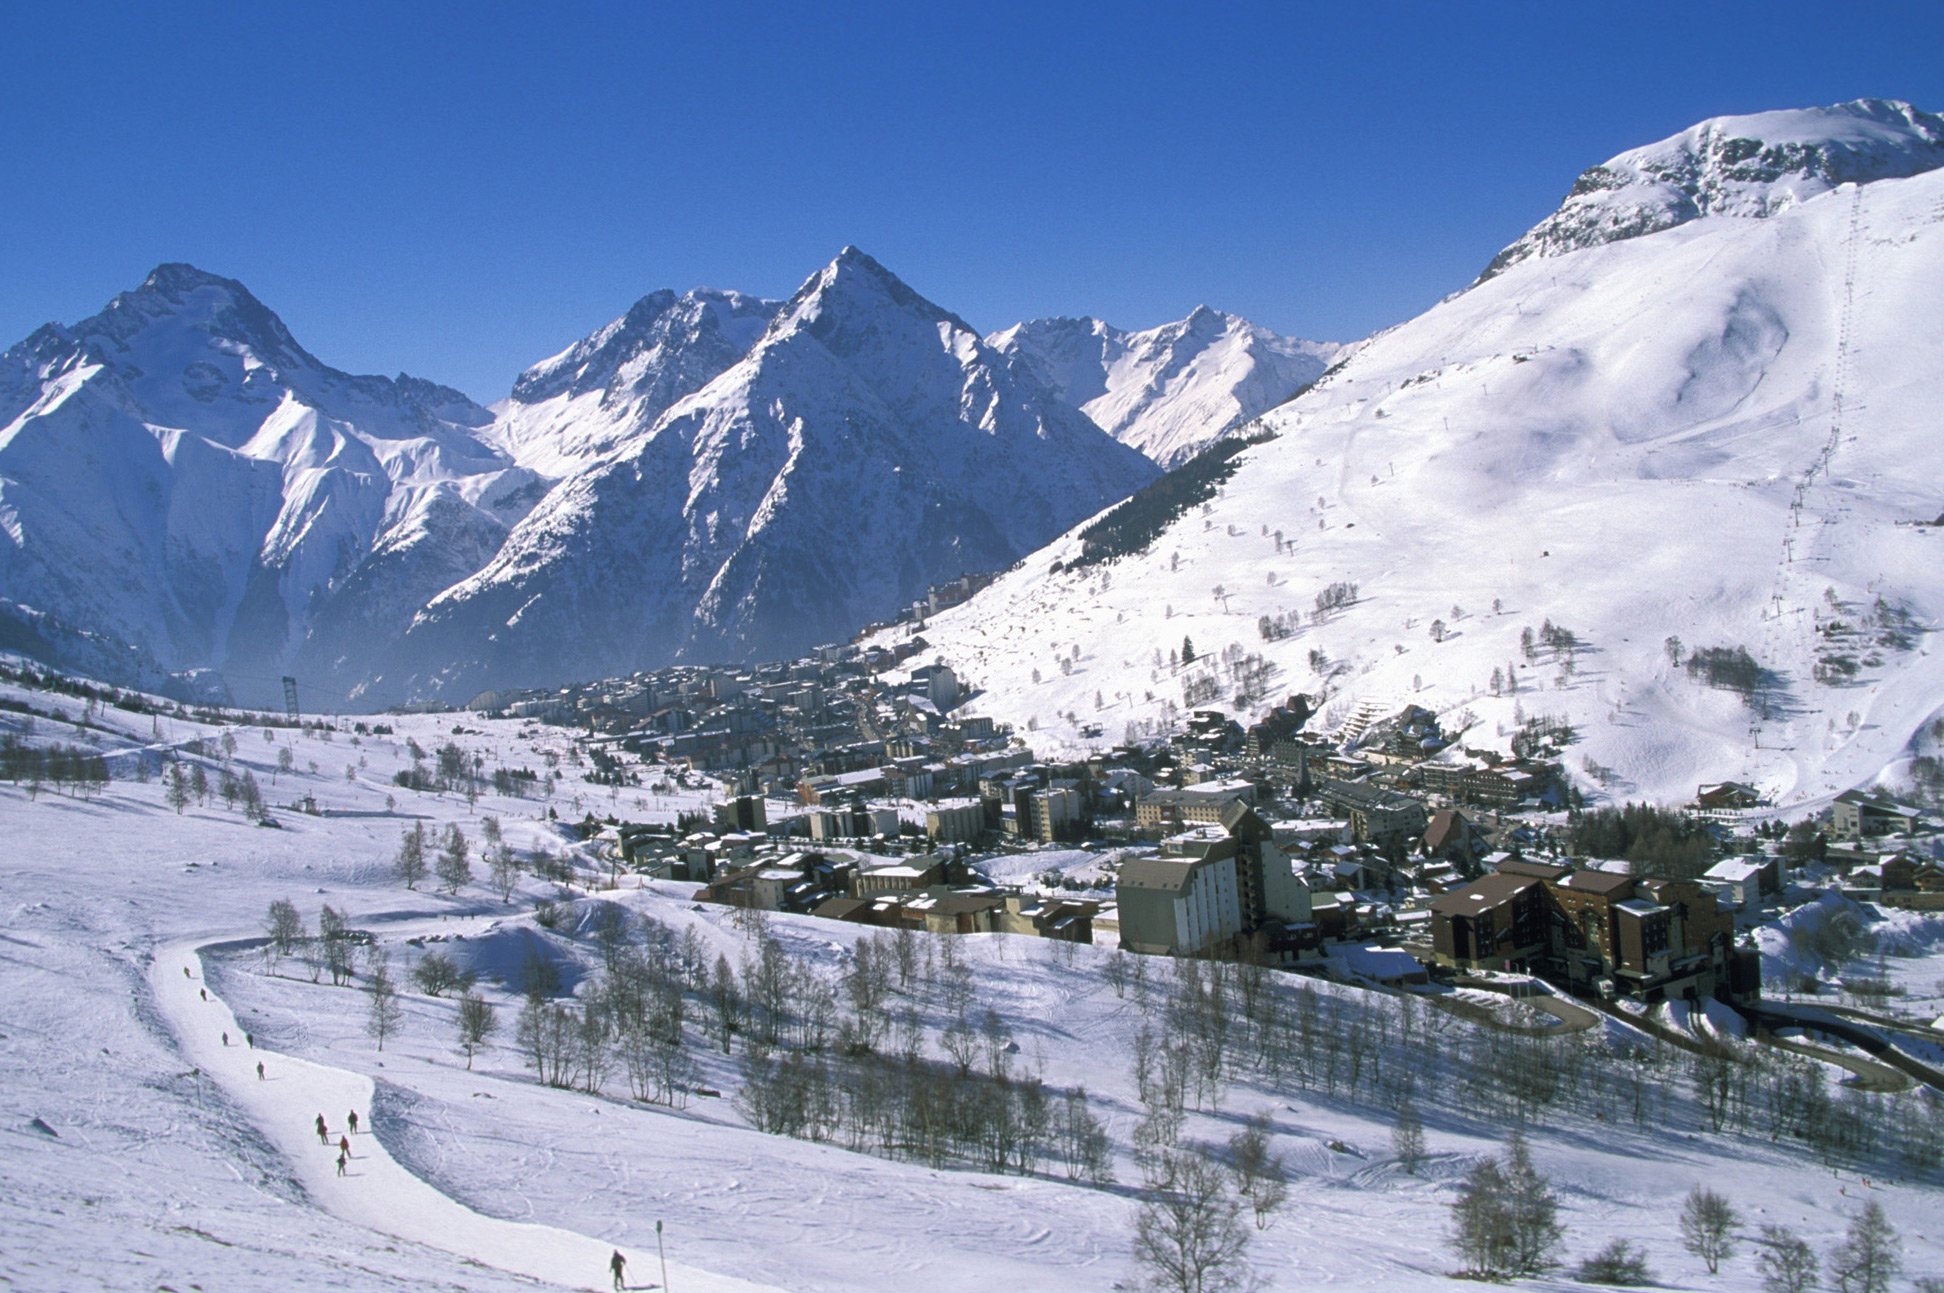 Франция. Альпы — 7 дней за 209 евро (жильё + ски-пасс + бассейн). Январь 2016!